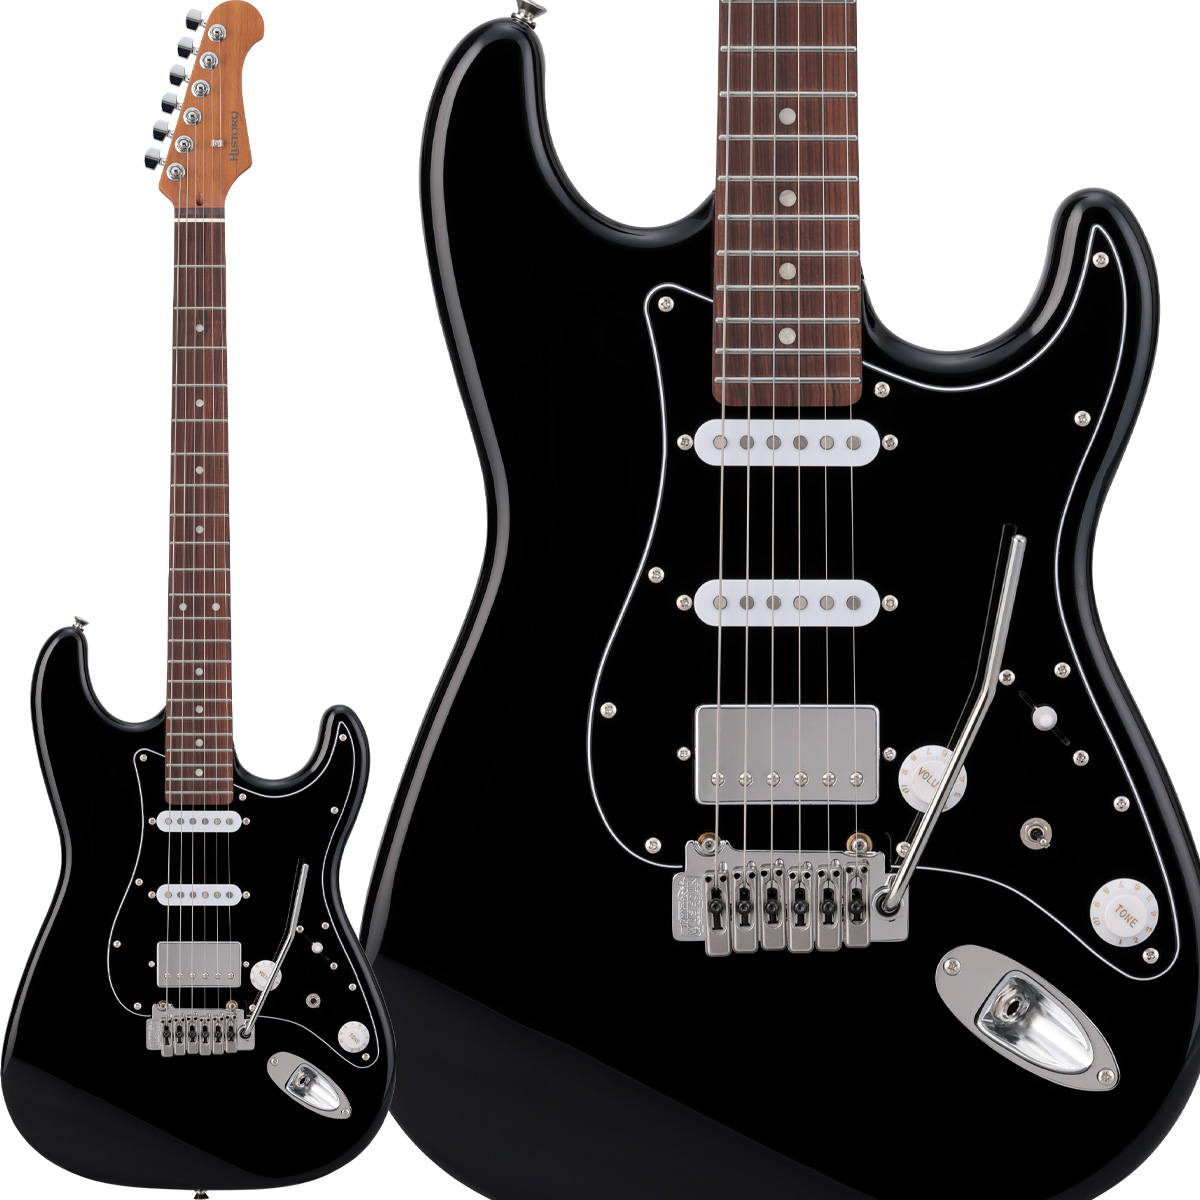 ストラト SSH エレキギター ブラック-www.steffen.com.br